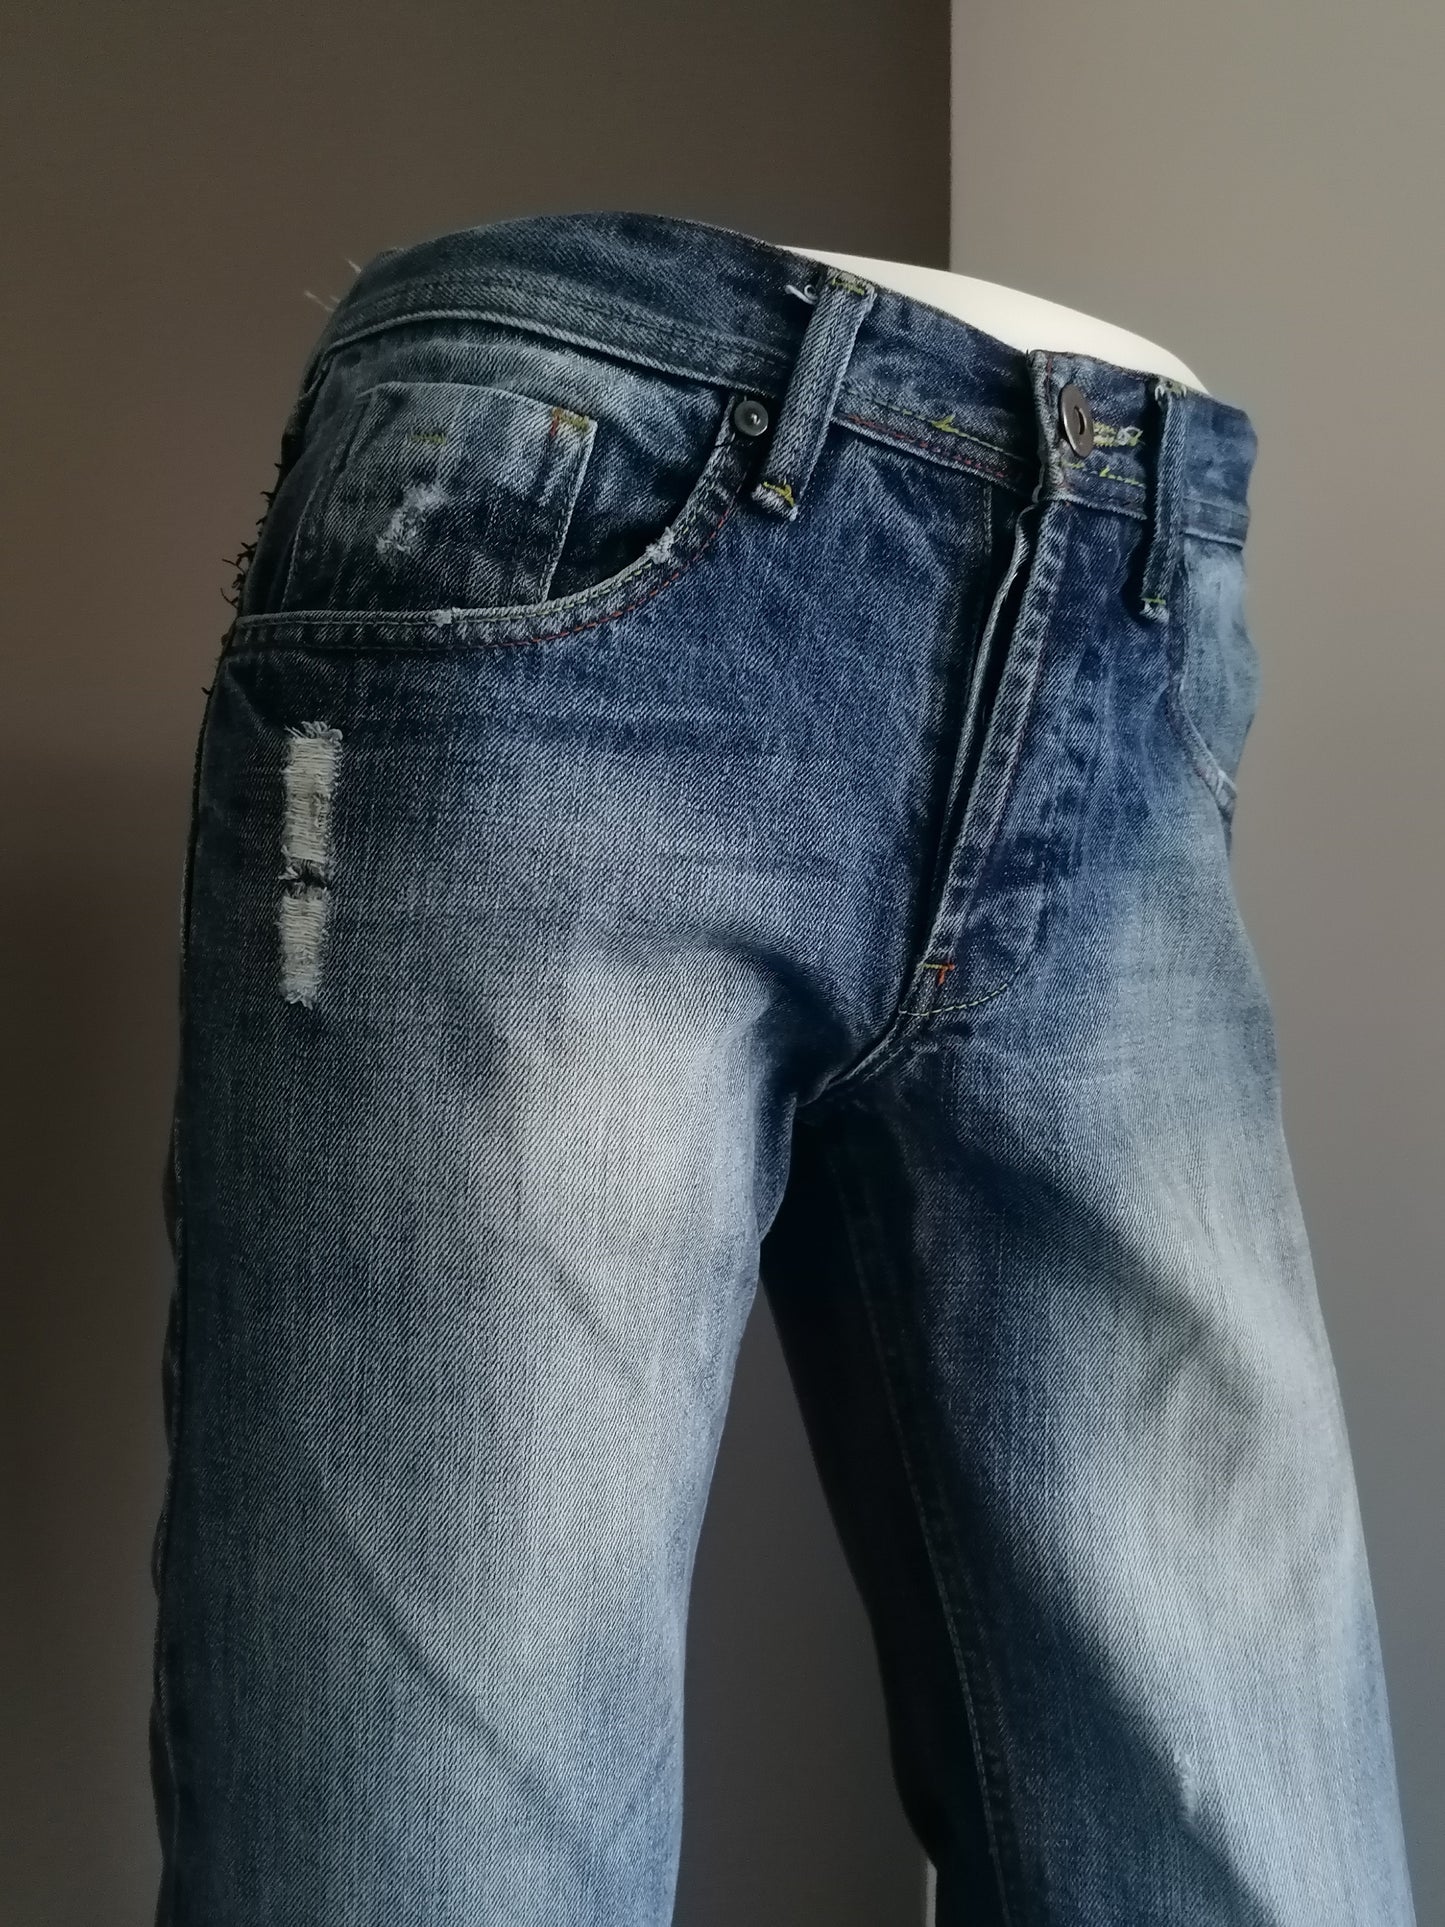 New Look Jeans. Colorato blu. Taglia W30 - L30. Gamba dritta.